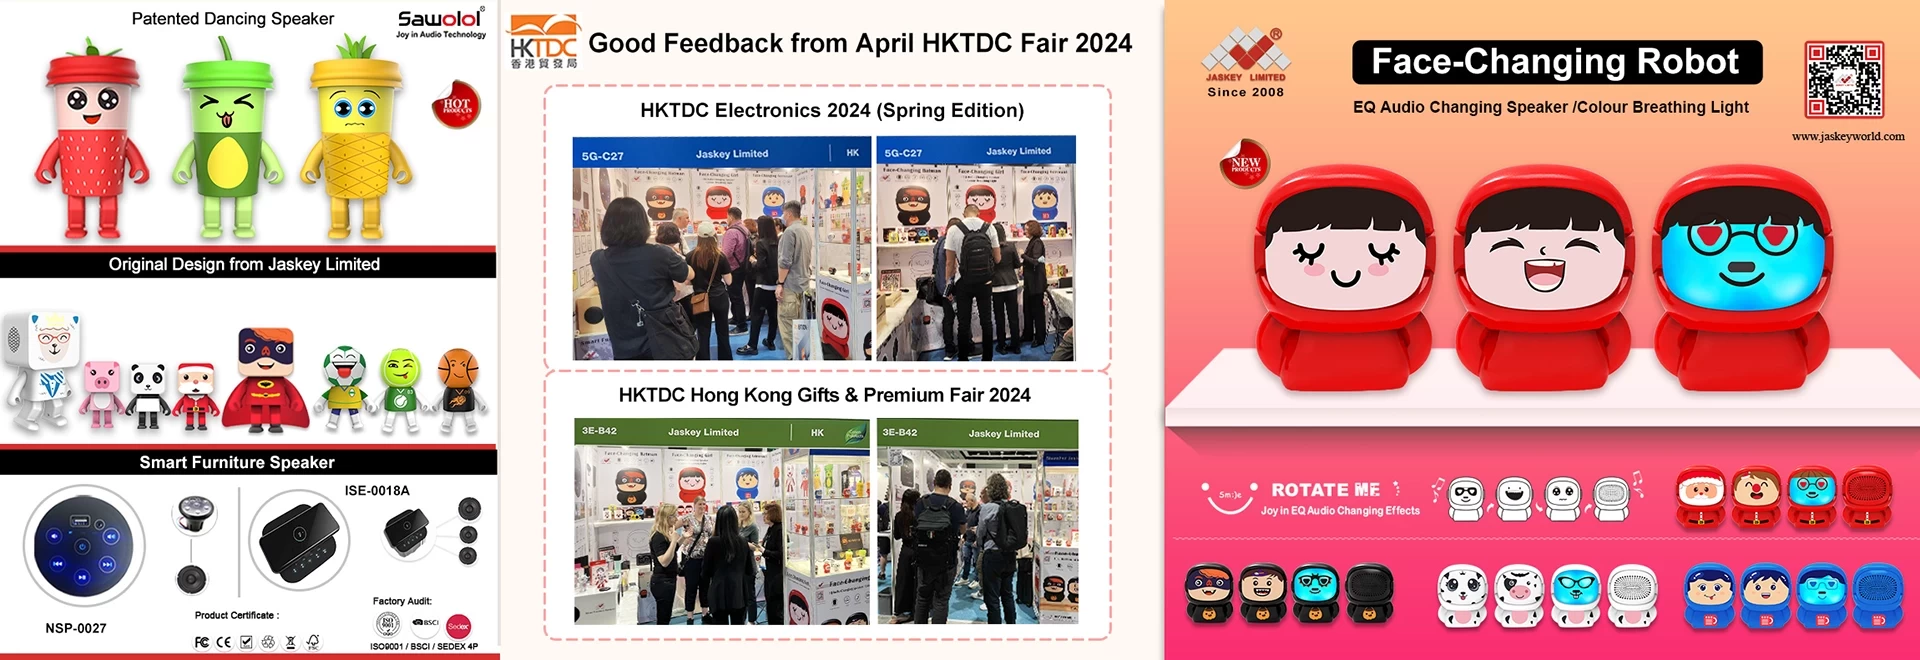 Gutes Feedback von der HKTDC Electronics 2024 (Spring Edition) und der Gifts & Premium Fair